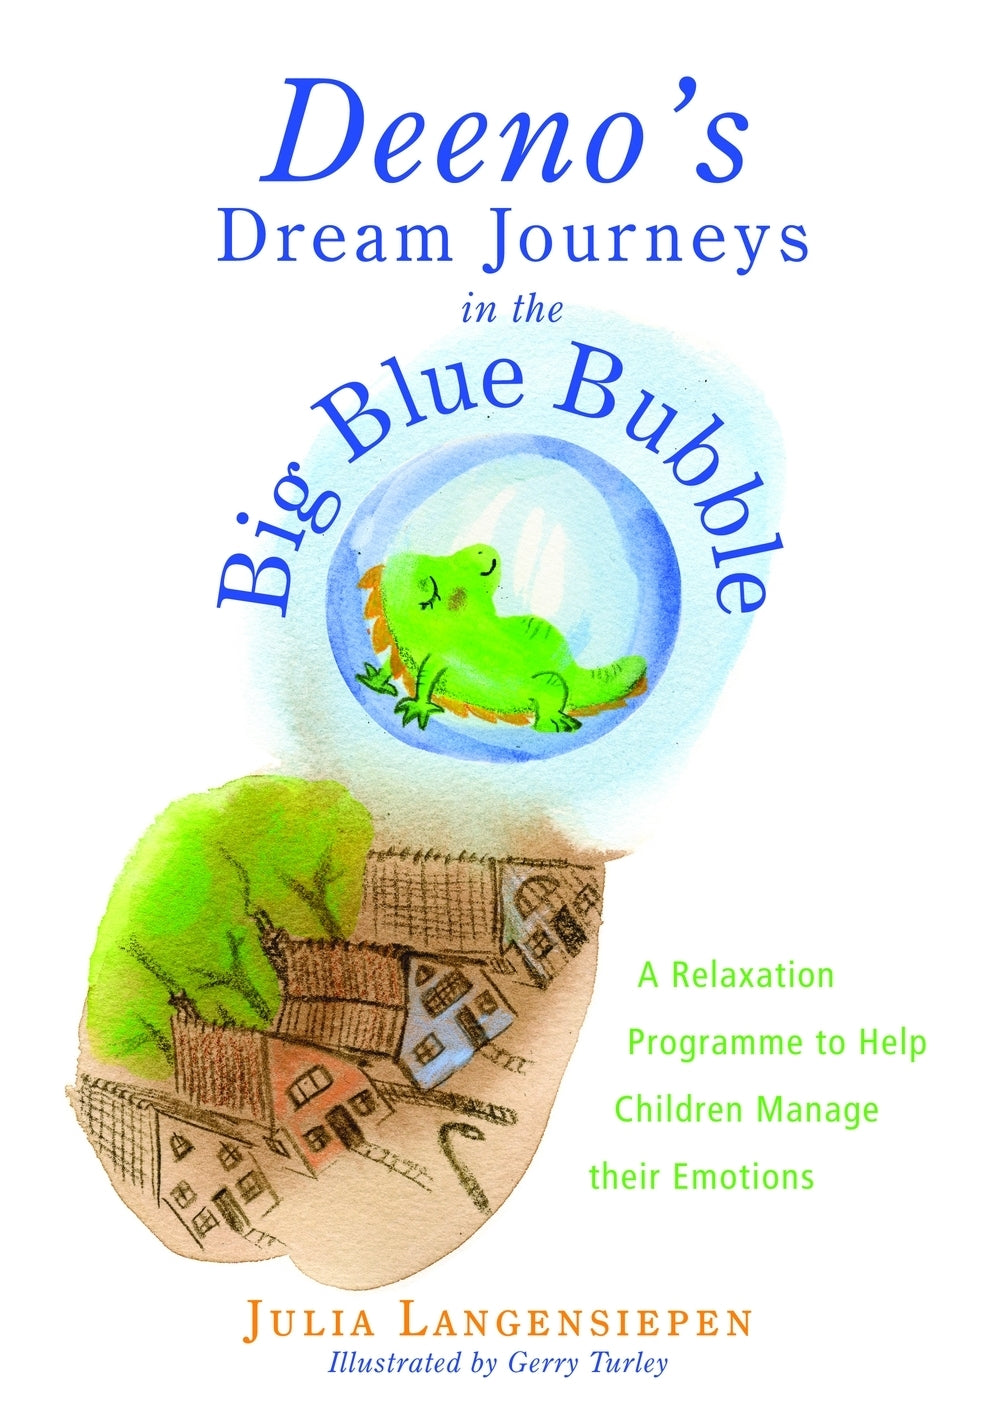 Deeno's Dream Journeys in the Big Blue Bubble by Gerry Turley, Julia Langensiepen